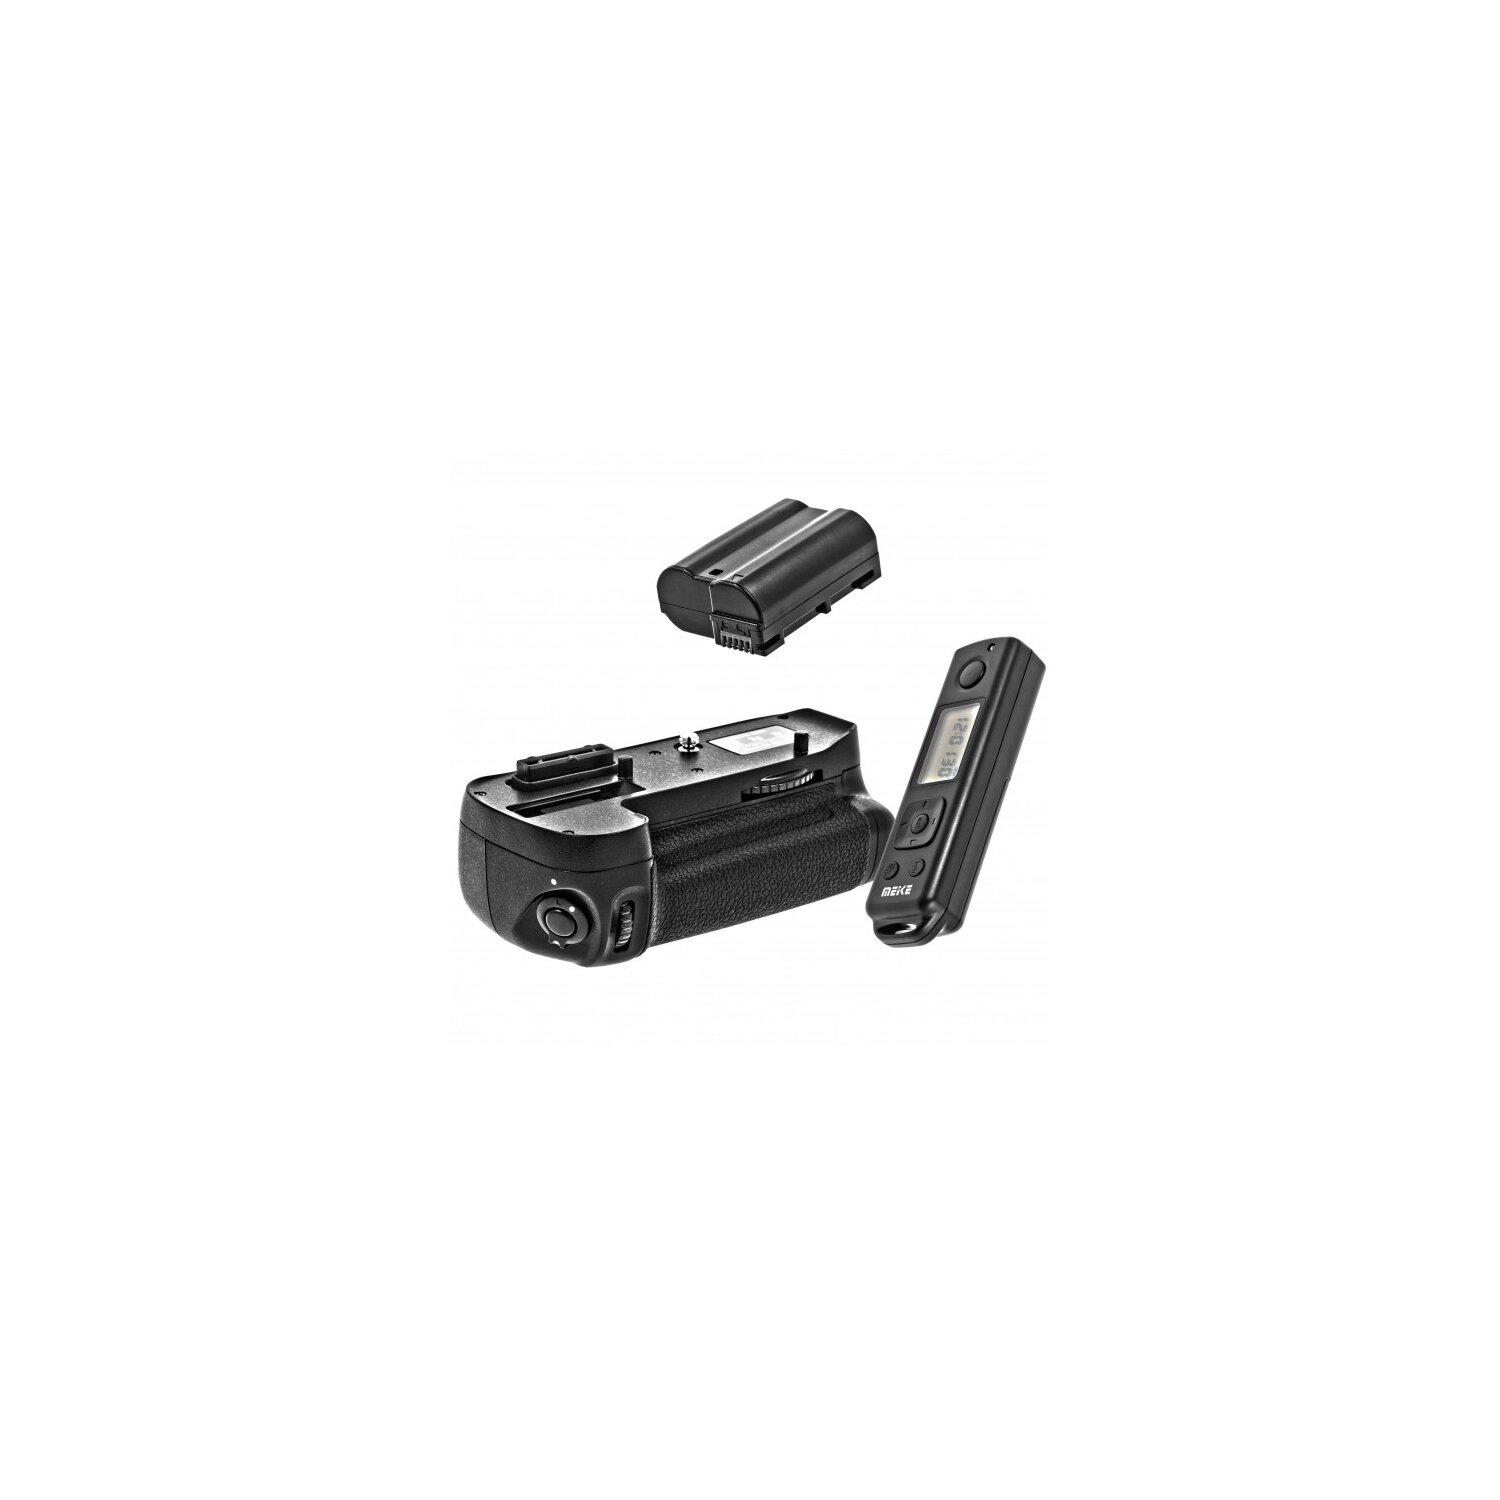 Meike LCD Timer Batteriegriff fuer Nikon D7100 + 1x Zusatzakku wie der EN-EL15 "Timerfunktion via Fernbedienung", doppelte Kapazität, Hochformatauslöser - wie der MB-D15